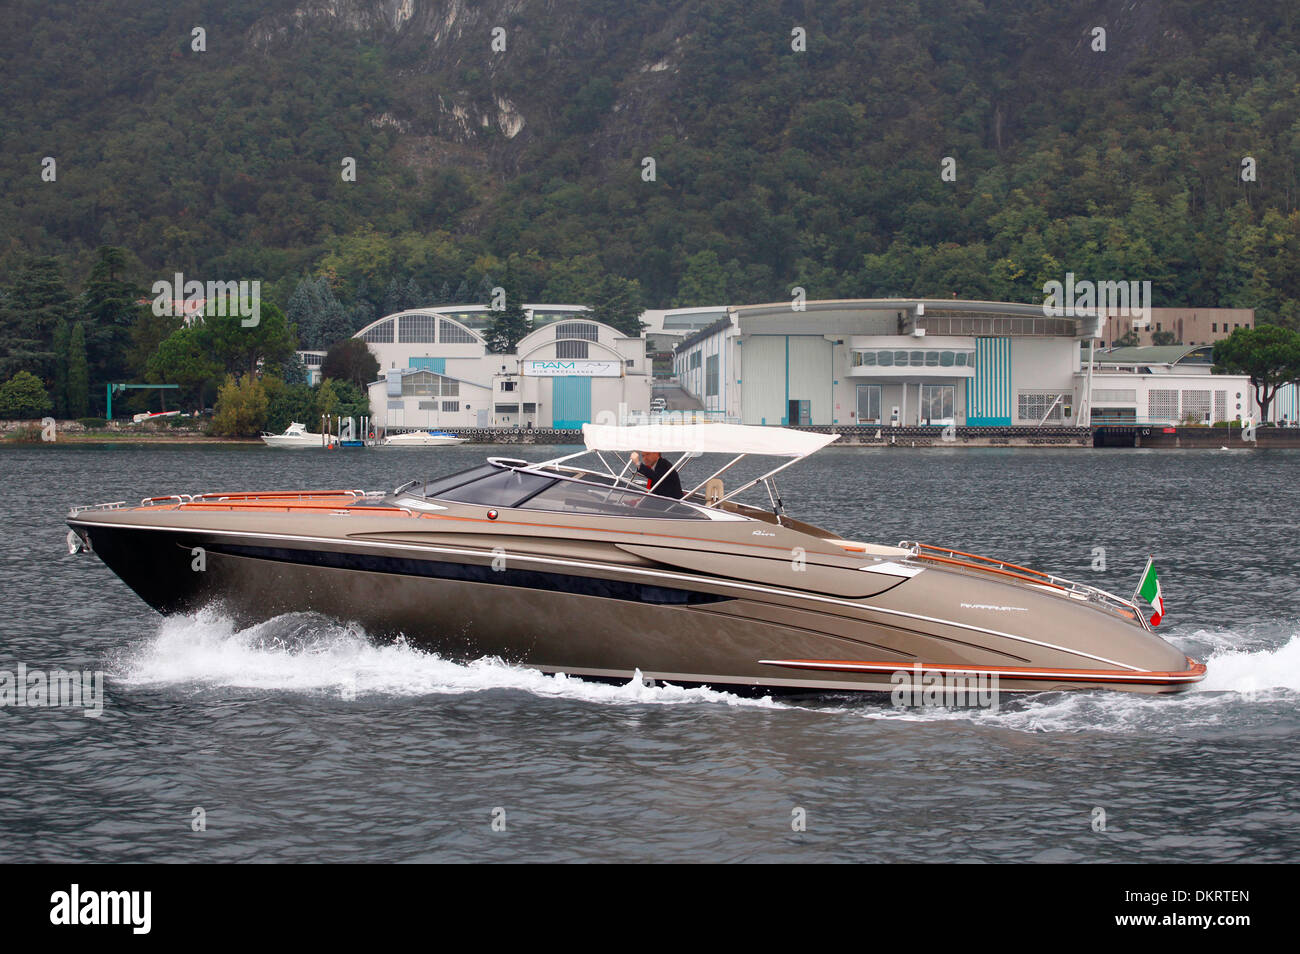 A Rivarama super yacht near the Riva factory on a misty Lake Iseo in Sarnico, Italy. Stock Photo